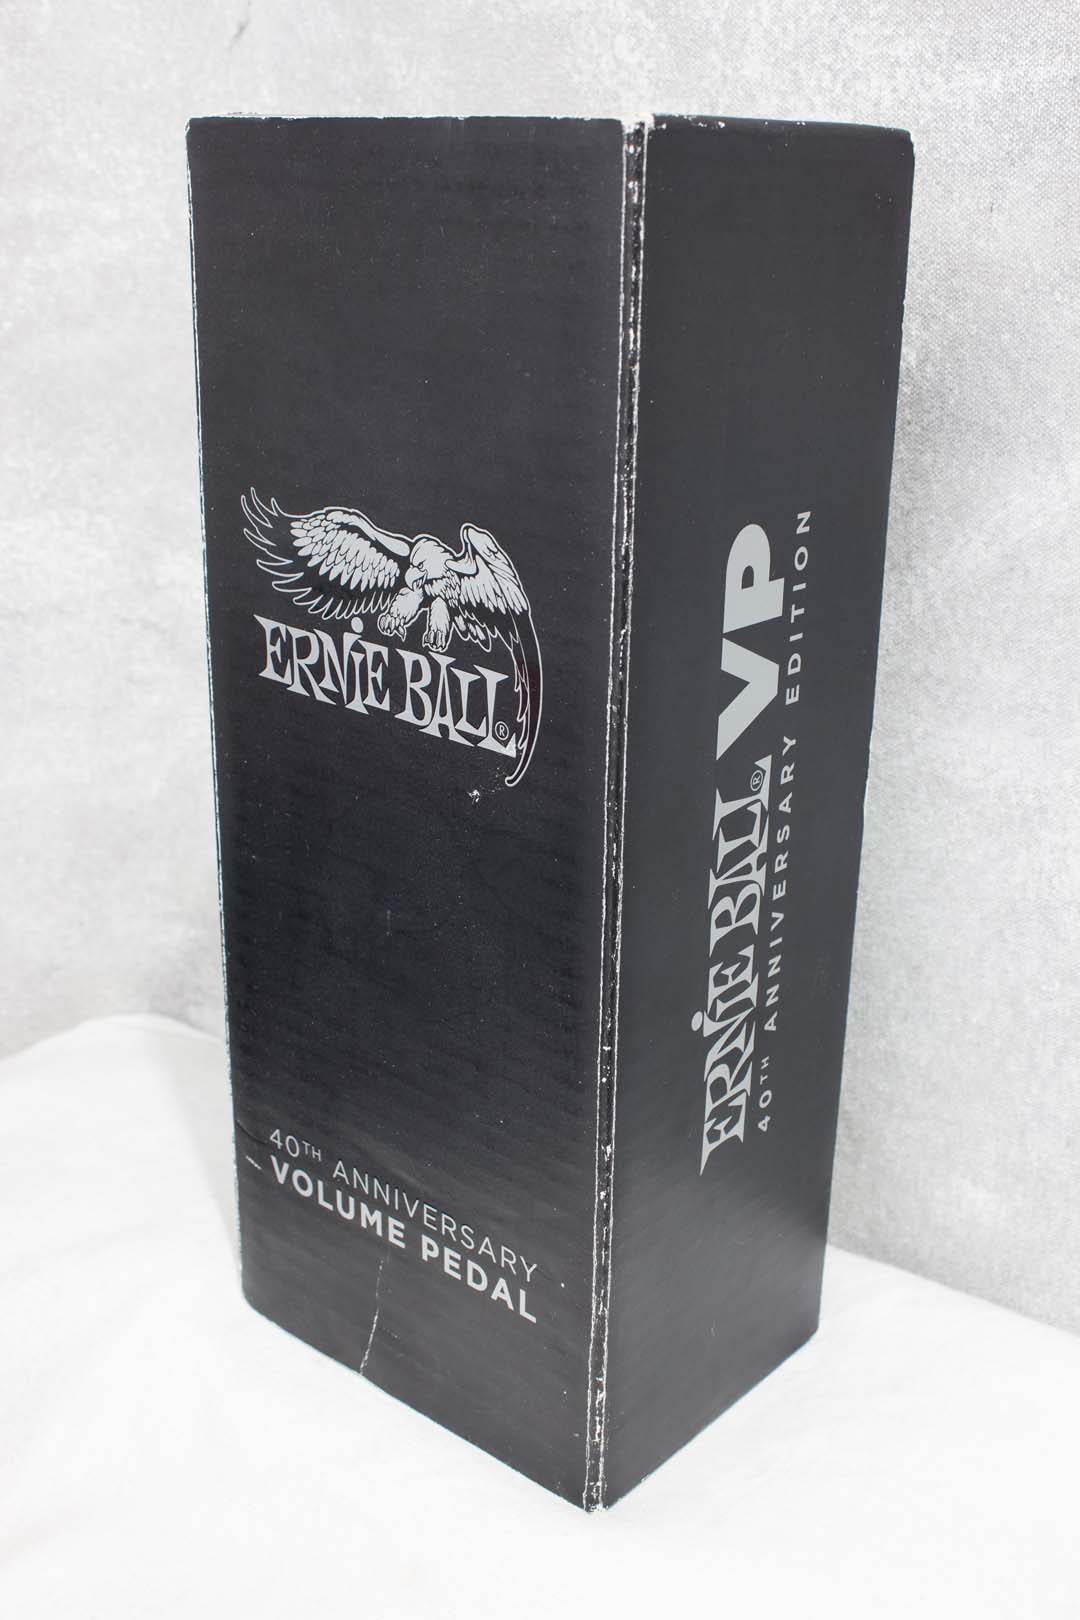 Ernie Ball VP 40th Anniversary Volume Pedal